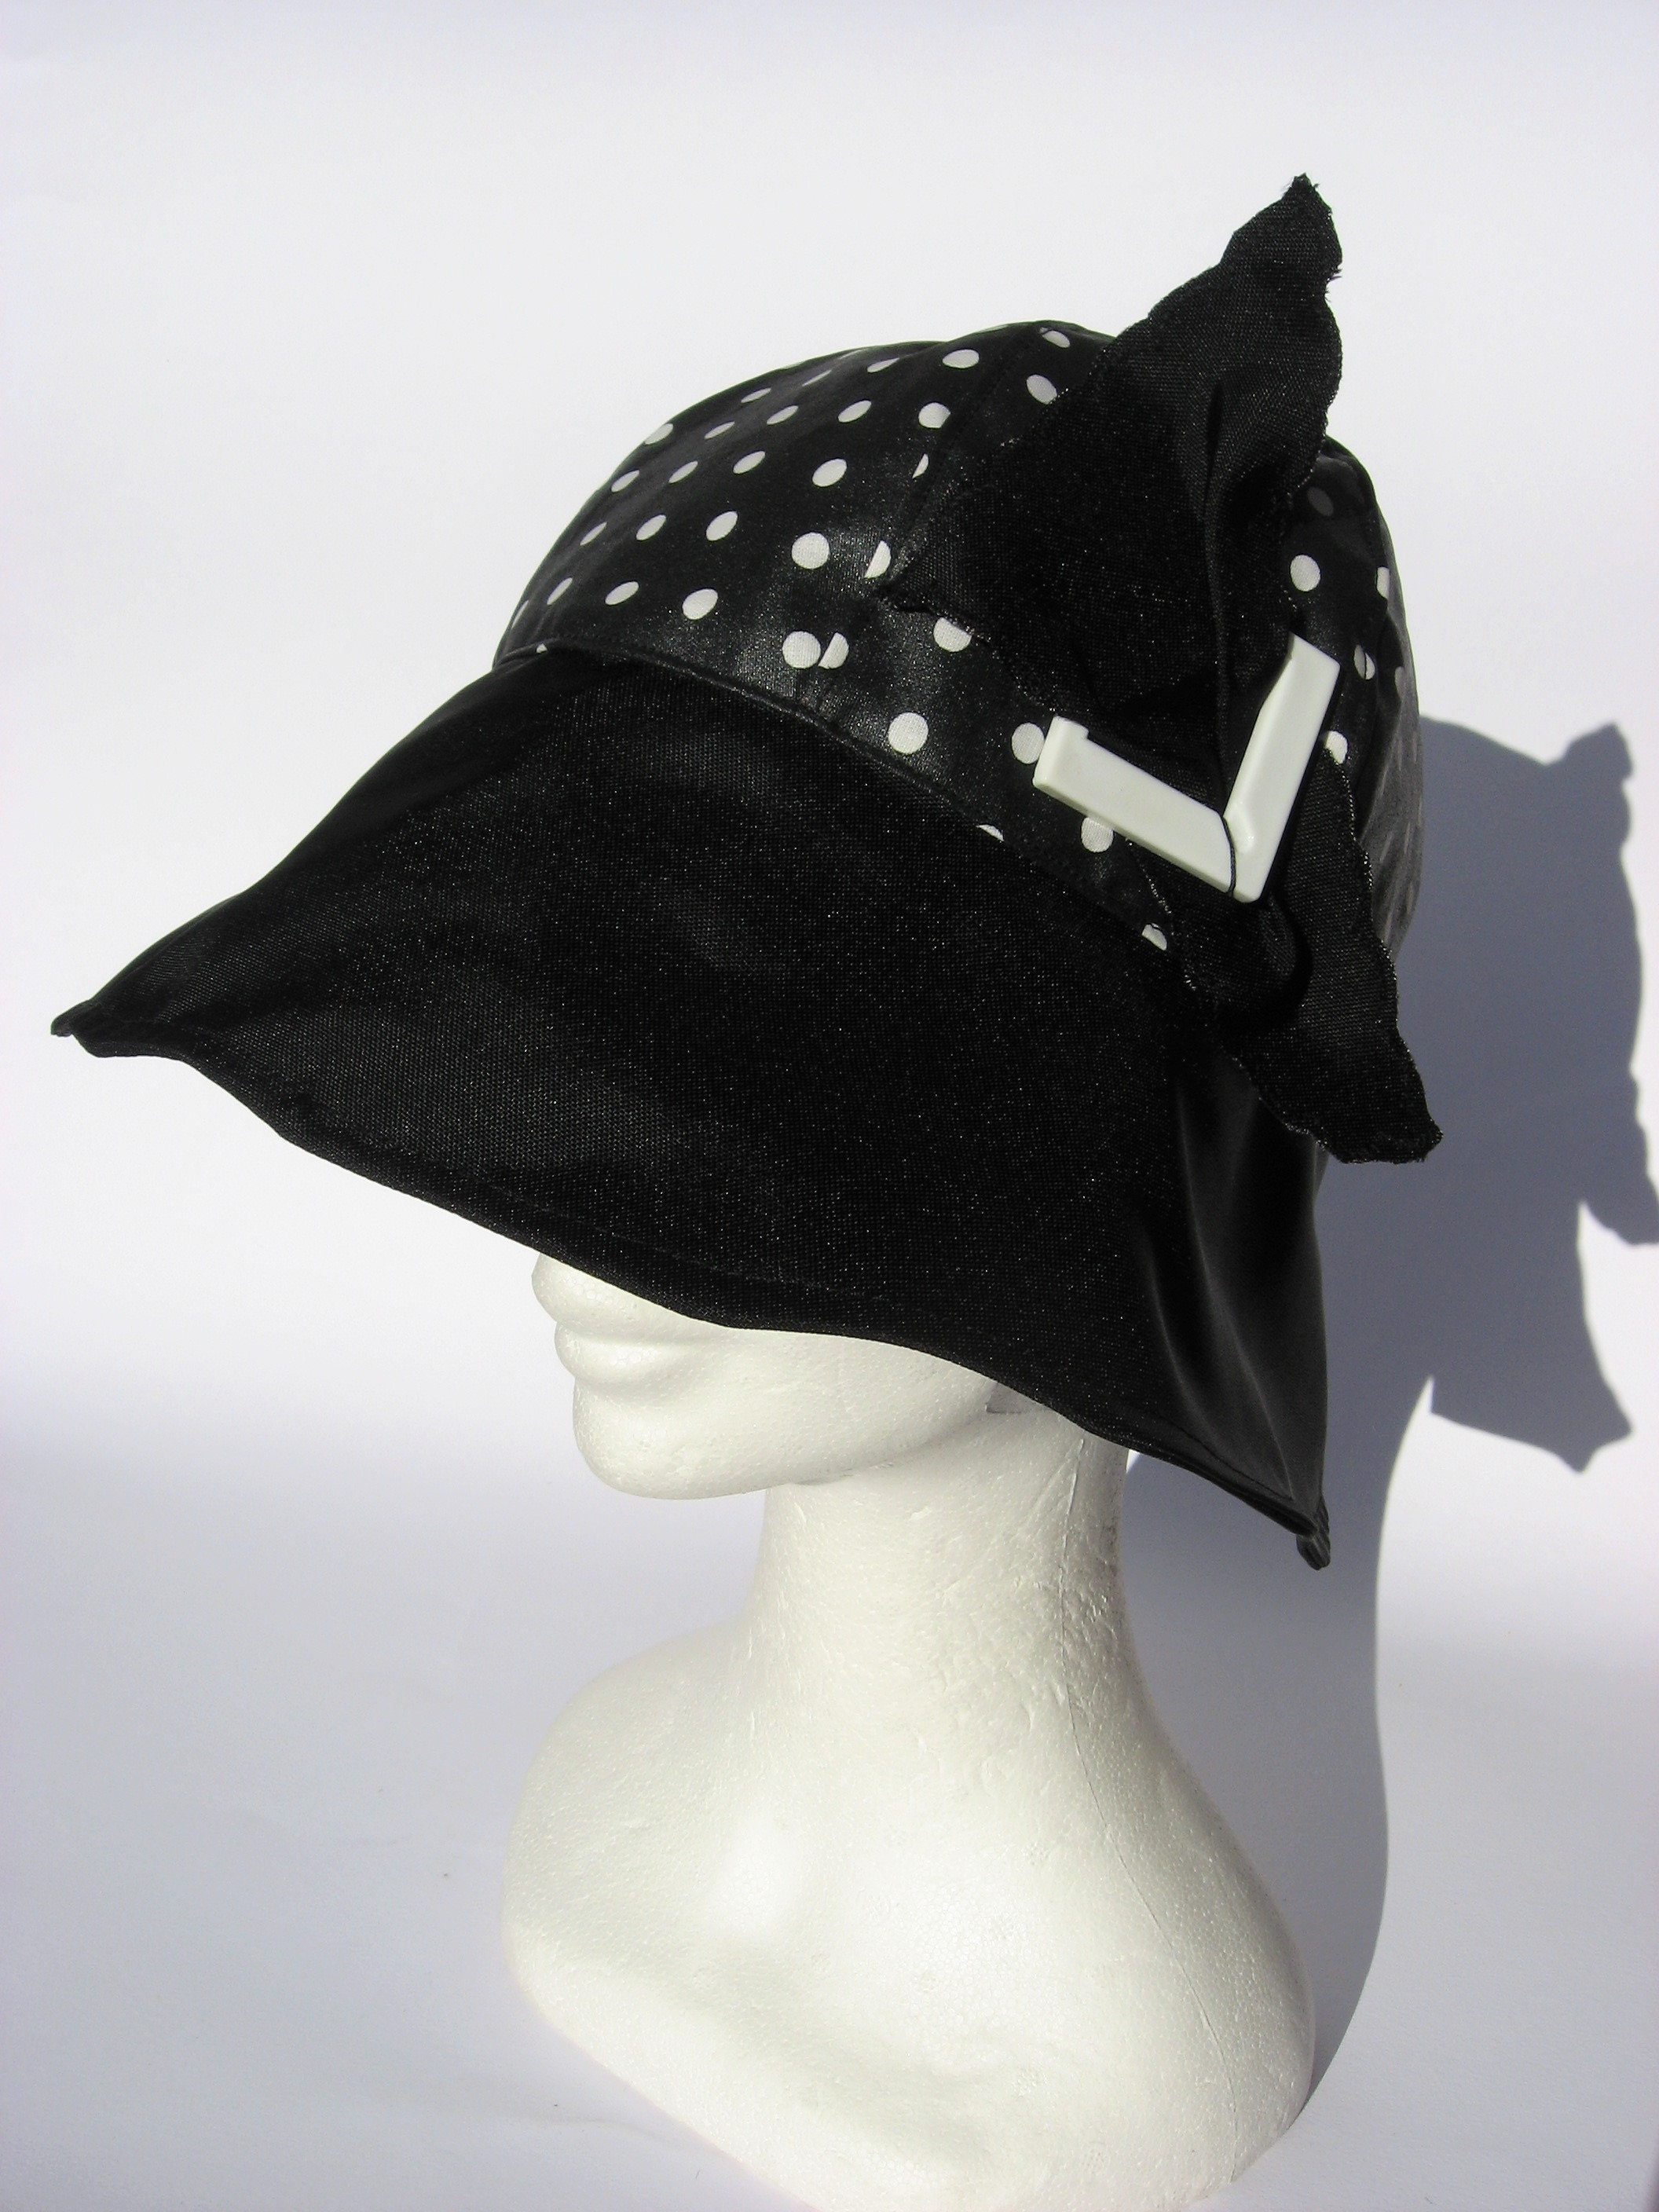 rojo y negro sombrero de campana de mujer Tamaño 56cm Sombrero de lluvia Accesorios Sombreros y gorras Sombreros de vestir Sombreros cloché sombrero impermeable 